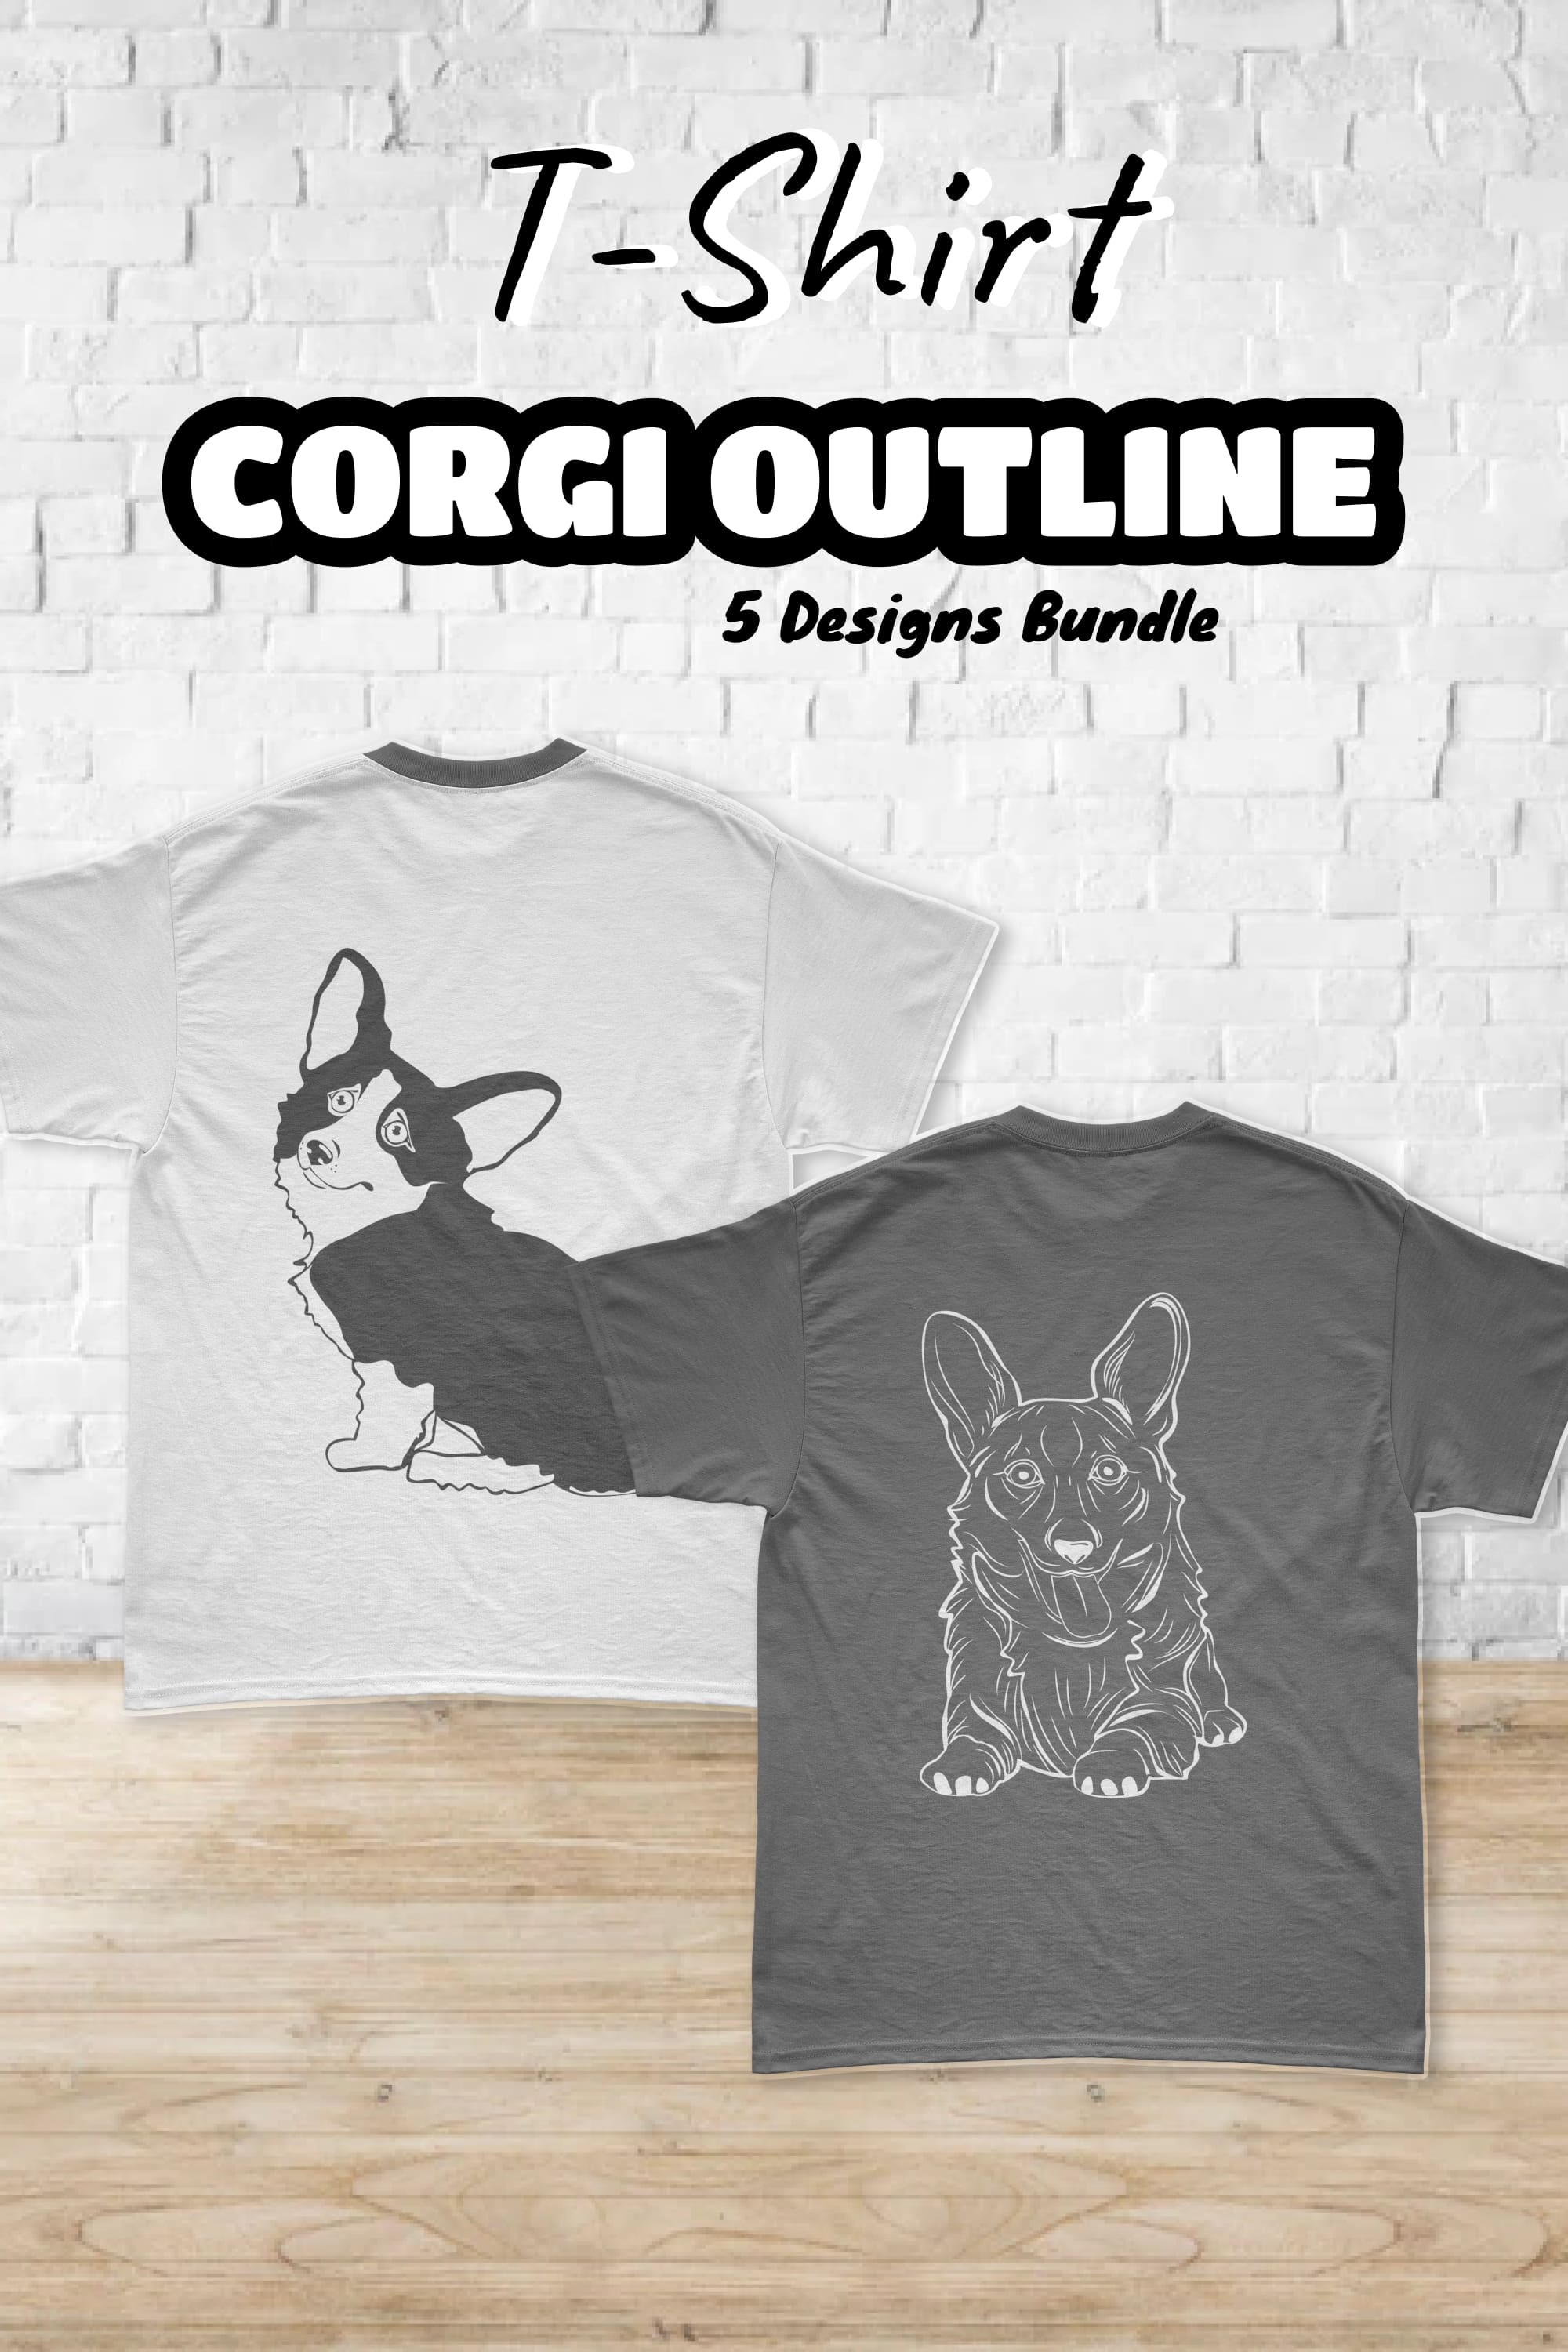 corgi outline t shirt designs bundle pinterest 141